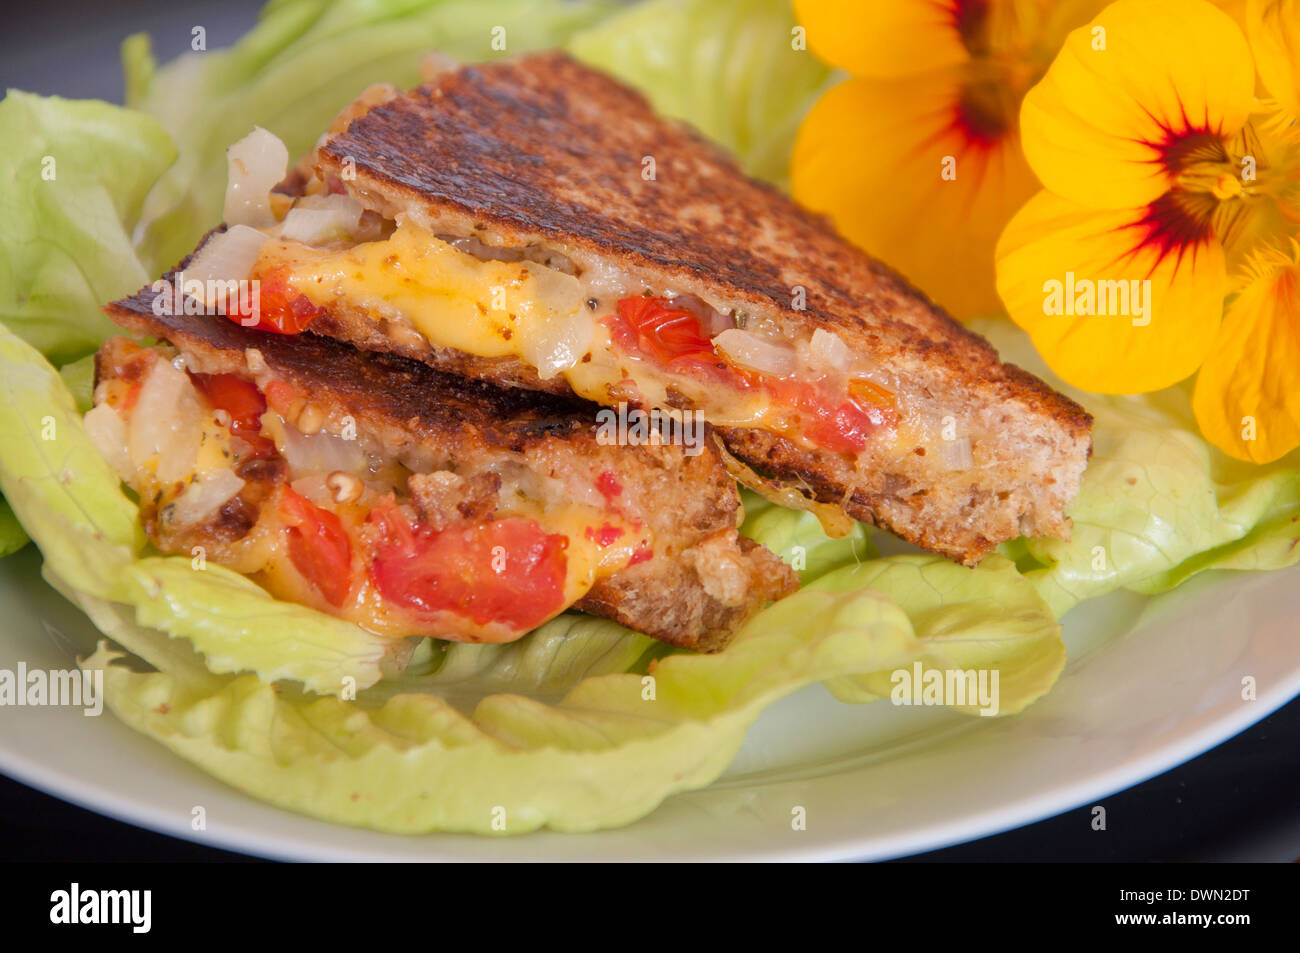 L'Oignon au fromage grillé sandwich tomate sur la Laitue Banque D'Images